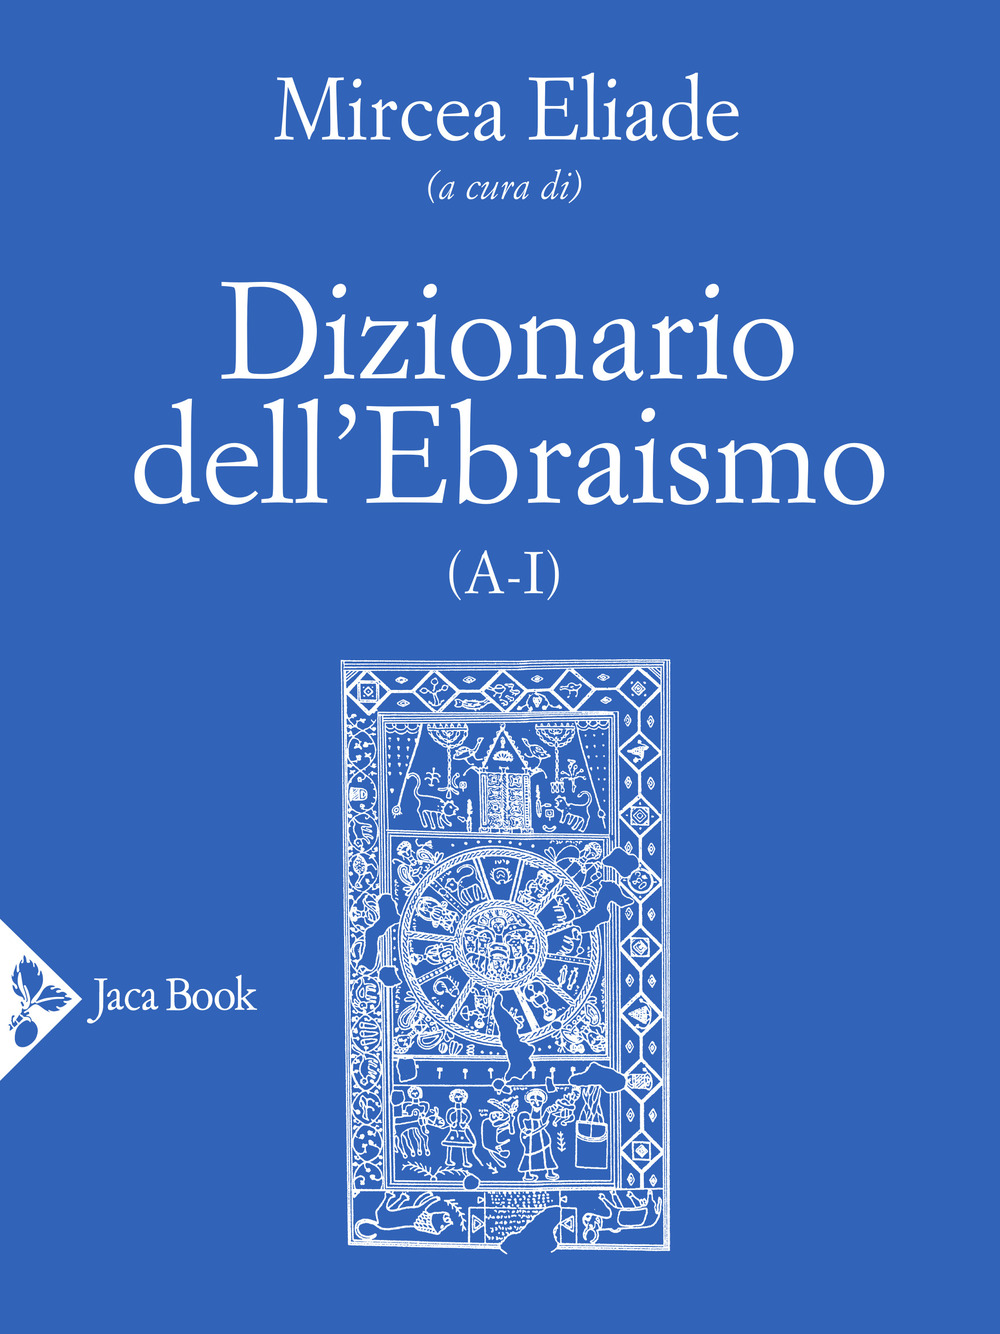 Image of Dizionario dell'ebraismo (A-I)